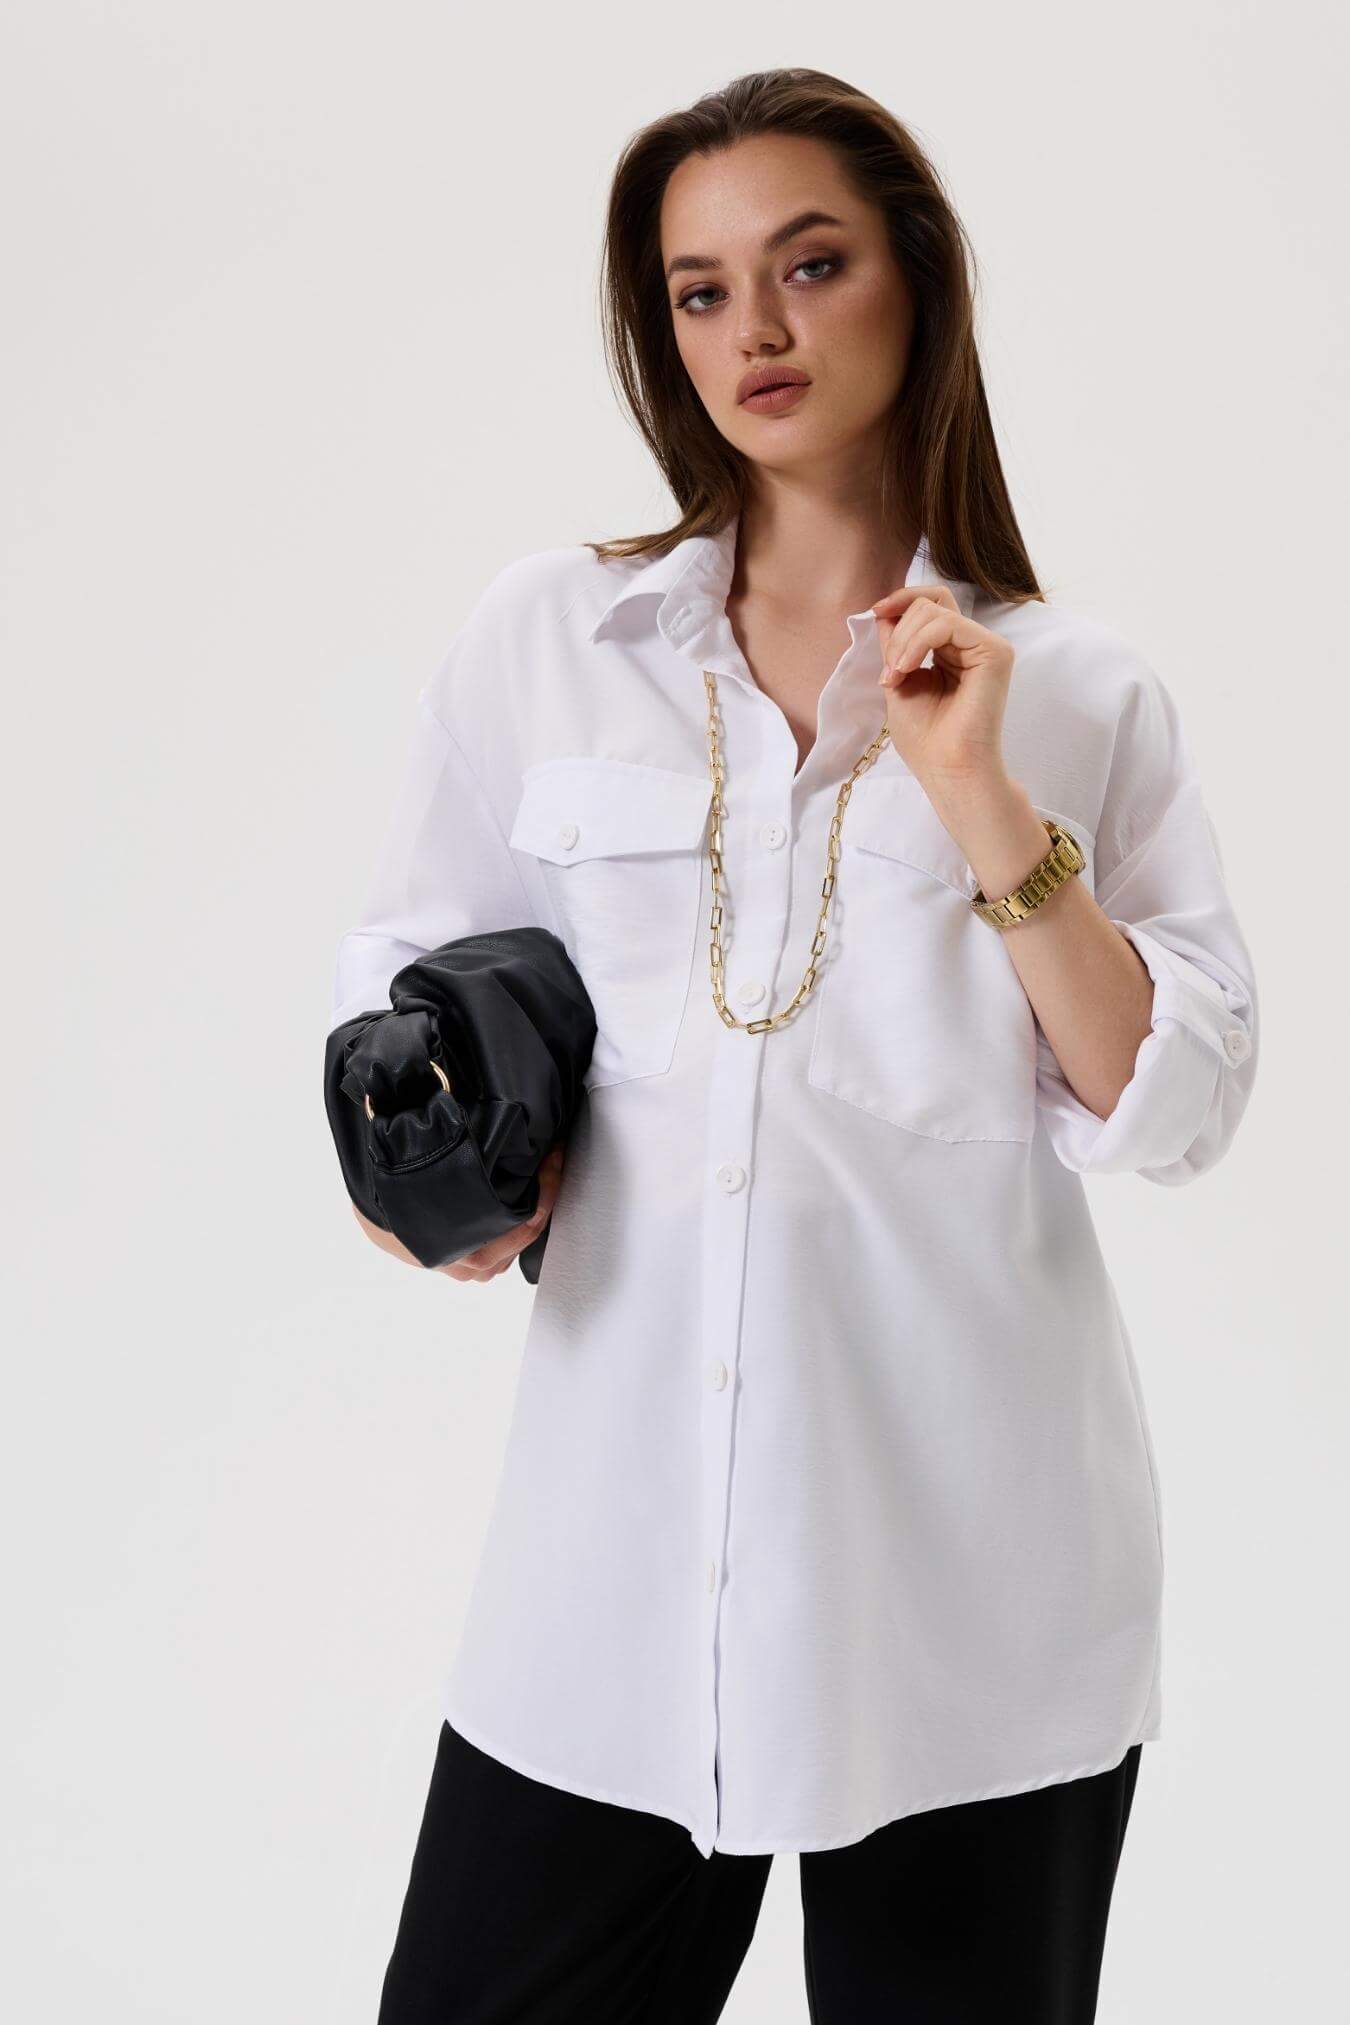 Рубашка для беременных женщин белая офисная женская летняя блузка одежда для будущих мам / Happy Moms